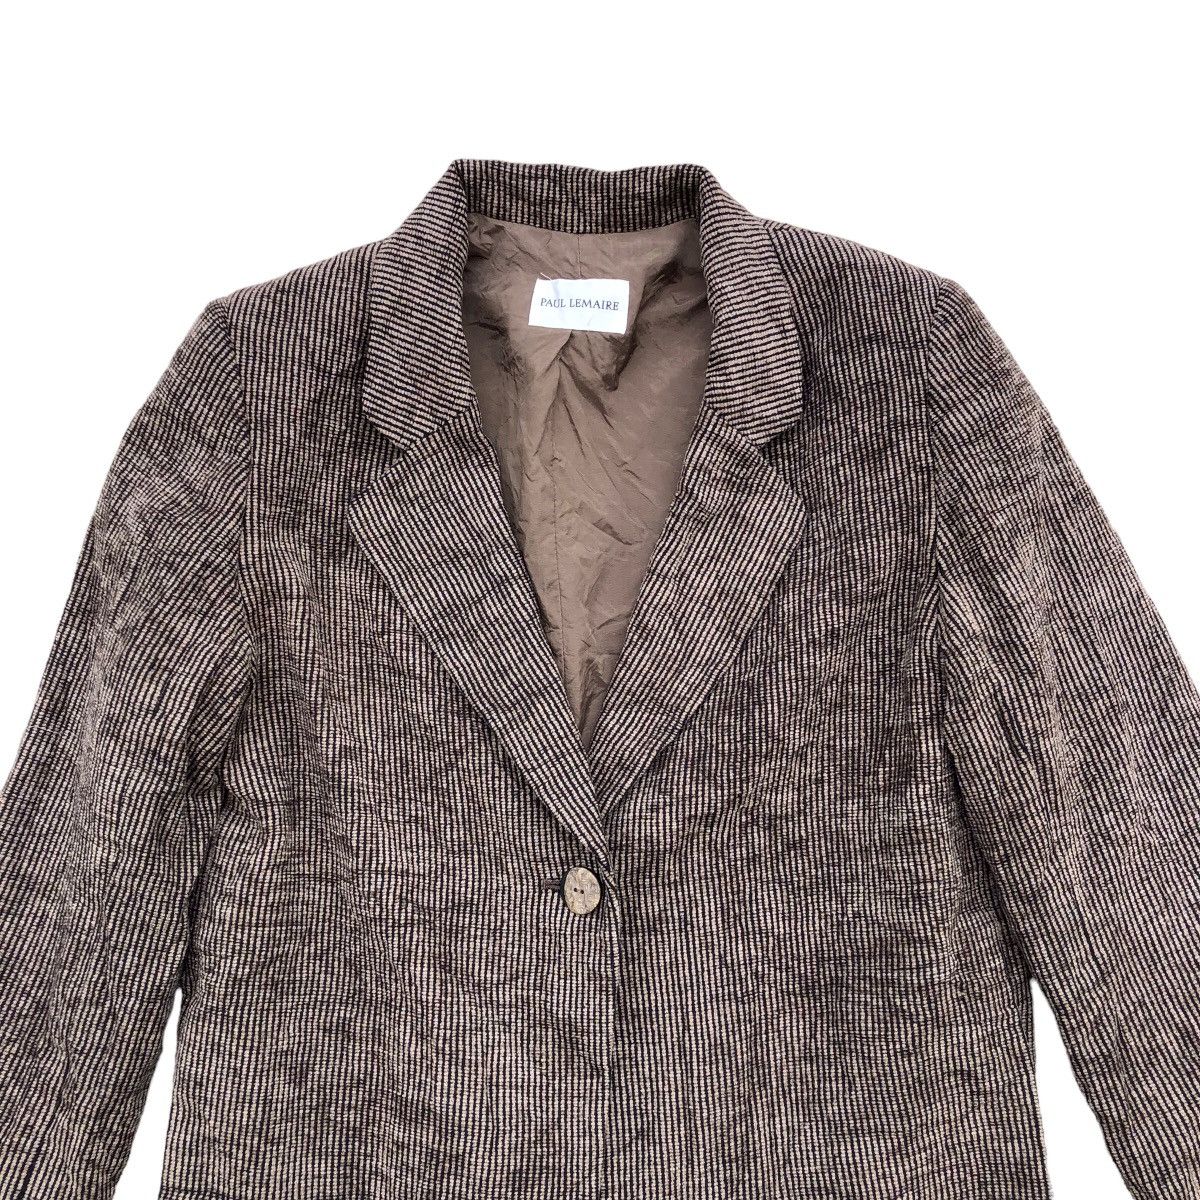 Archival Clothing PAUL LEMAIRE Corduroy Blazer Coat Size M / US 6-8 / IT 42-44 - 3 Thumbnail